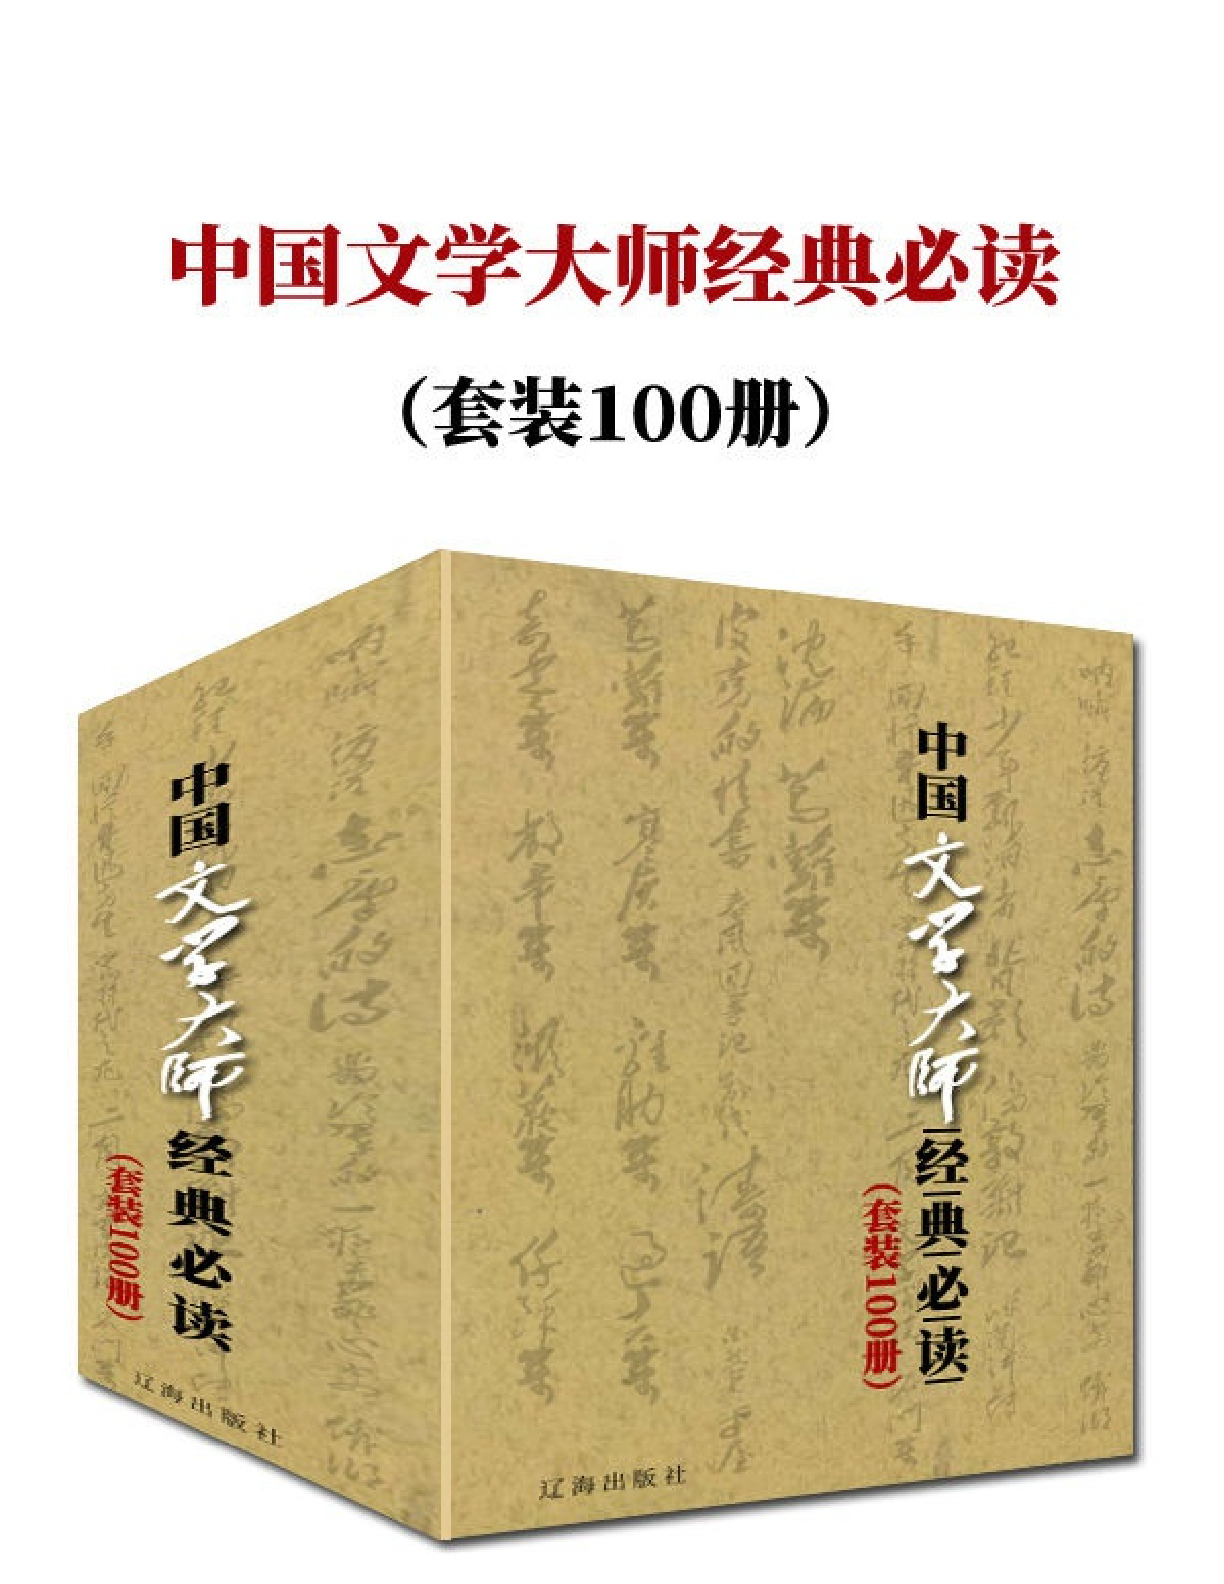 中国文学大师经典必读 套装100册 带书签